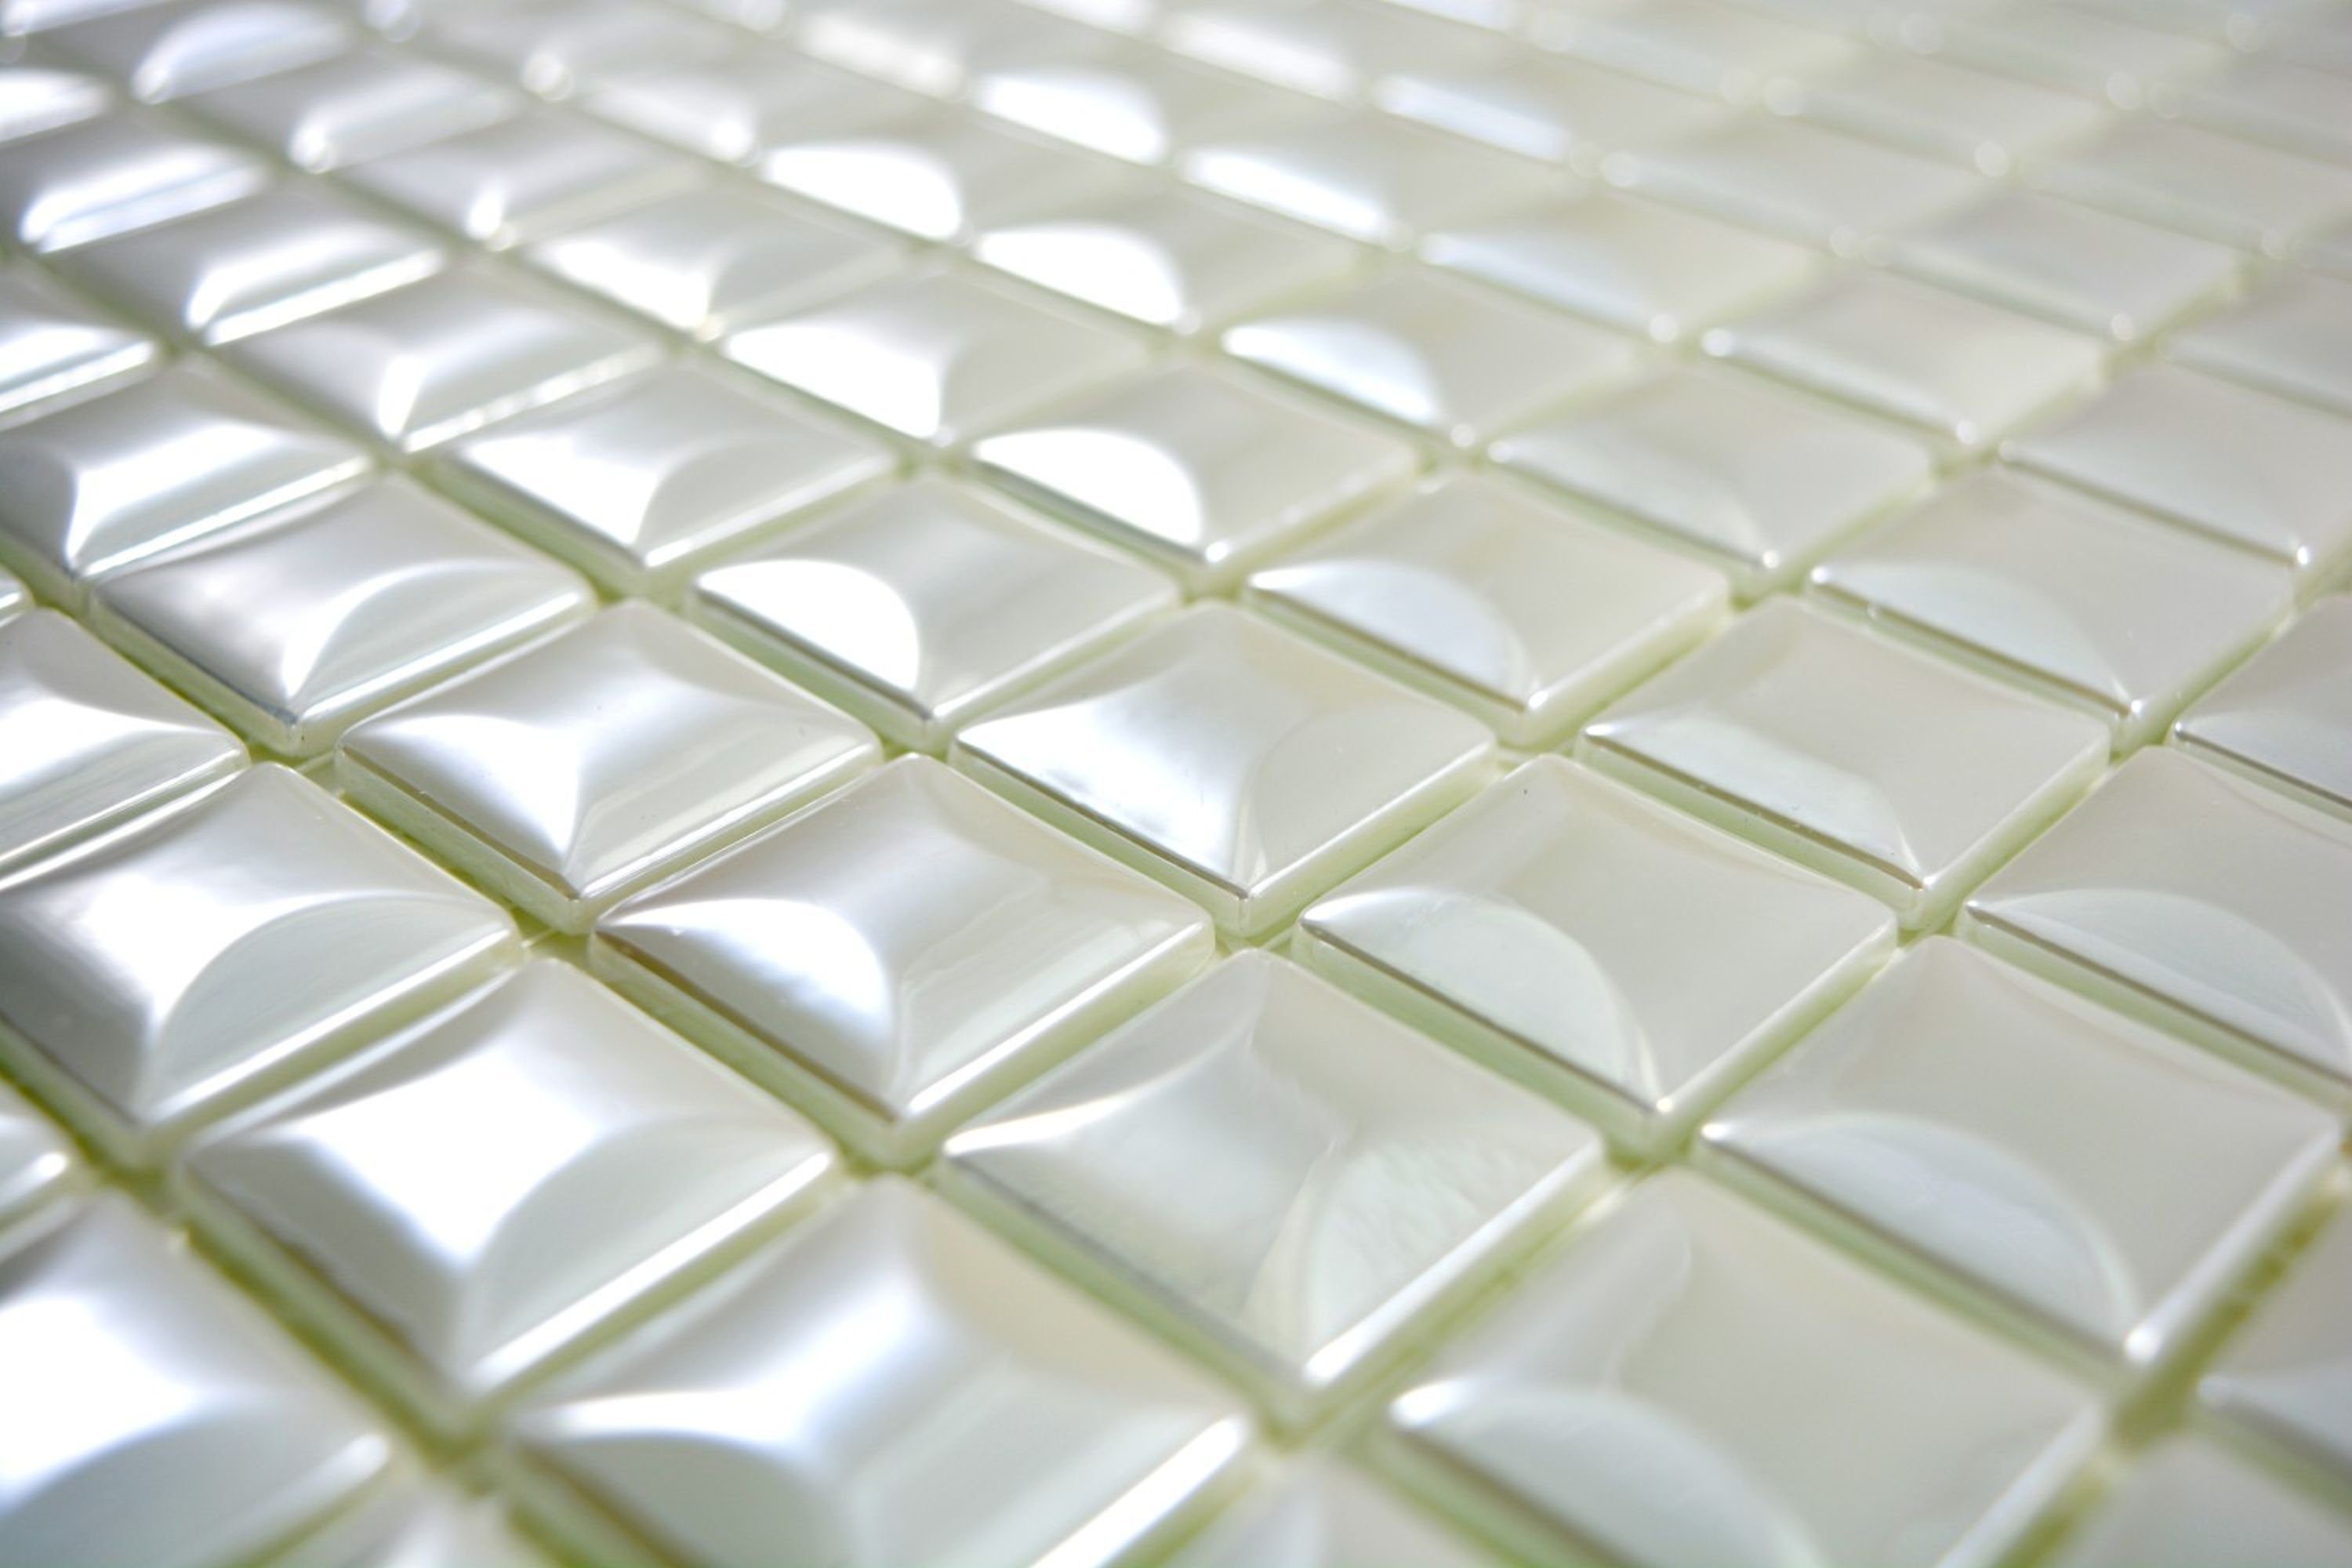 Mosani Mosaikfliesen Recycling glänzend 10 Mosaikmatten Mosaikfliesen Glasmosaik weiß 